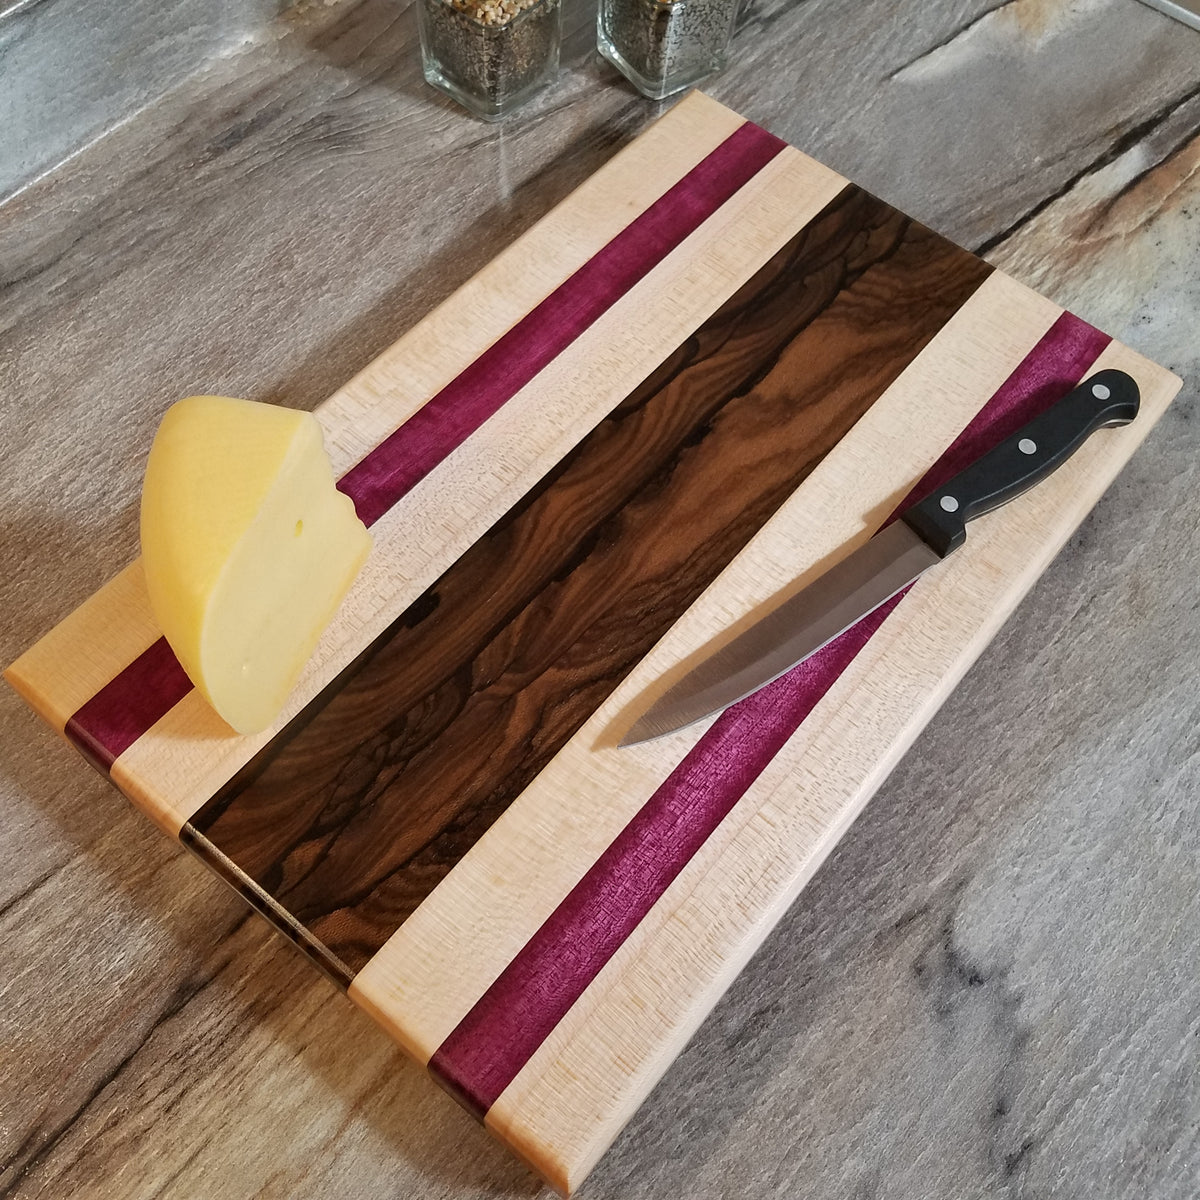 Walnut, Holly, & Padauk Wood 18 x 12 Cutting Board – LLB WoodWorx